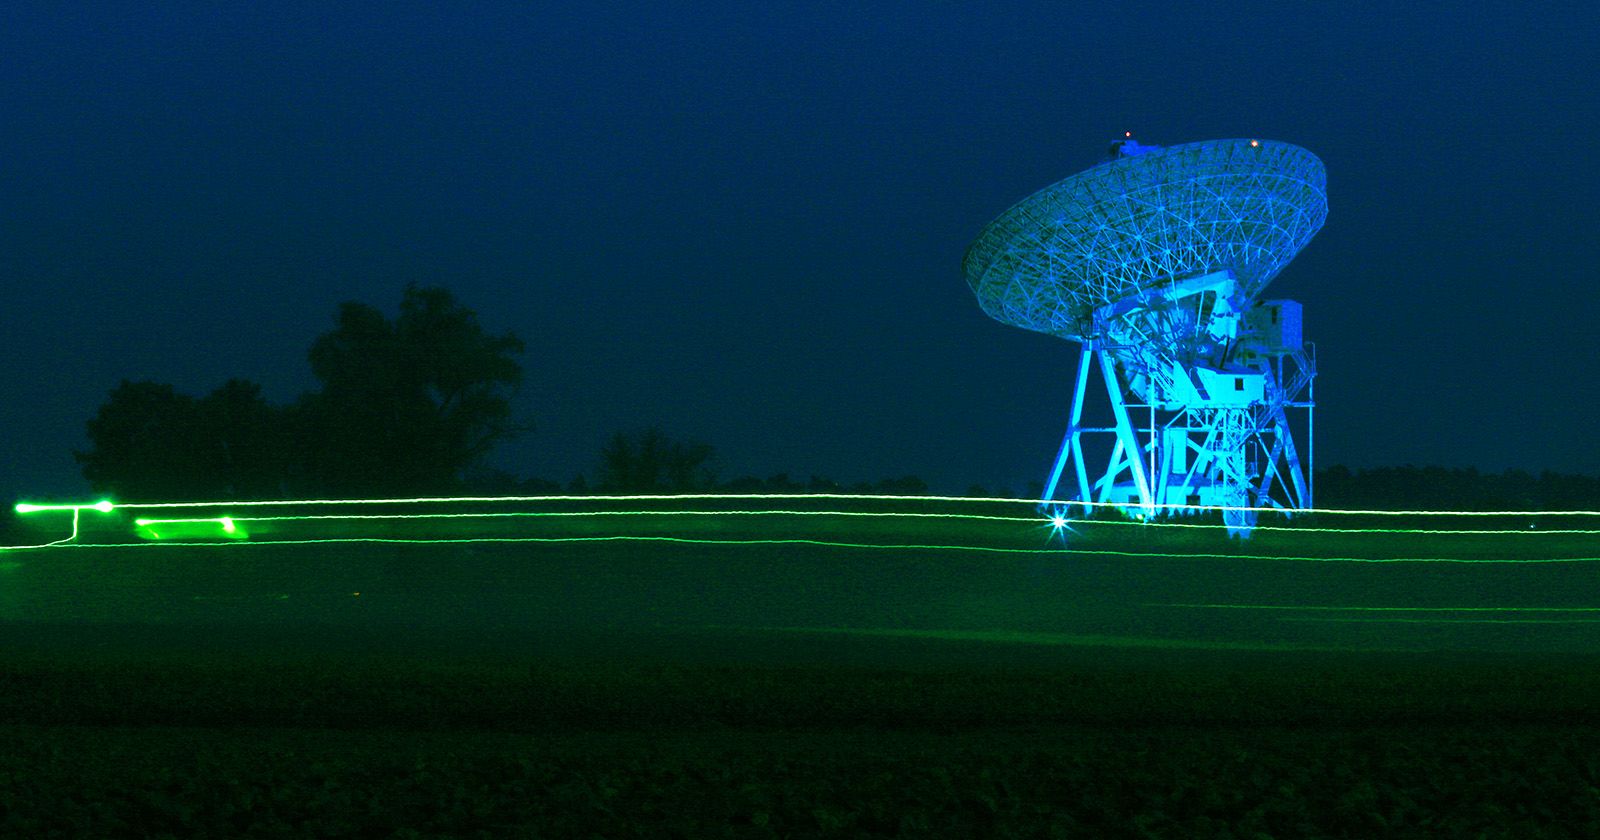 Radioteleskop Instytutu Astronomii UMK w Piwnicach od lat należy do międzynarodowej sieci interferometrii wielkobazowej (VLBI) Zdjęcie radioteleskopu w Instytucie Astronomii UMK pod Toruniem